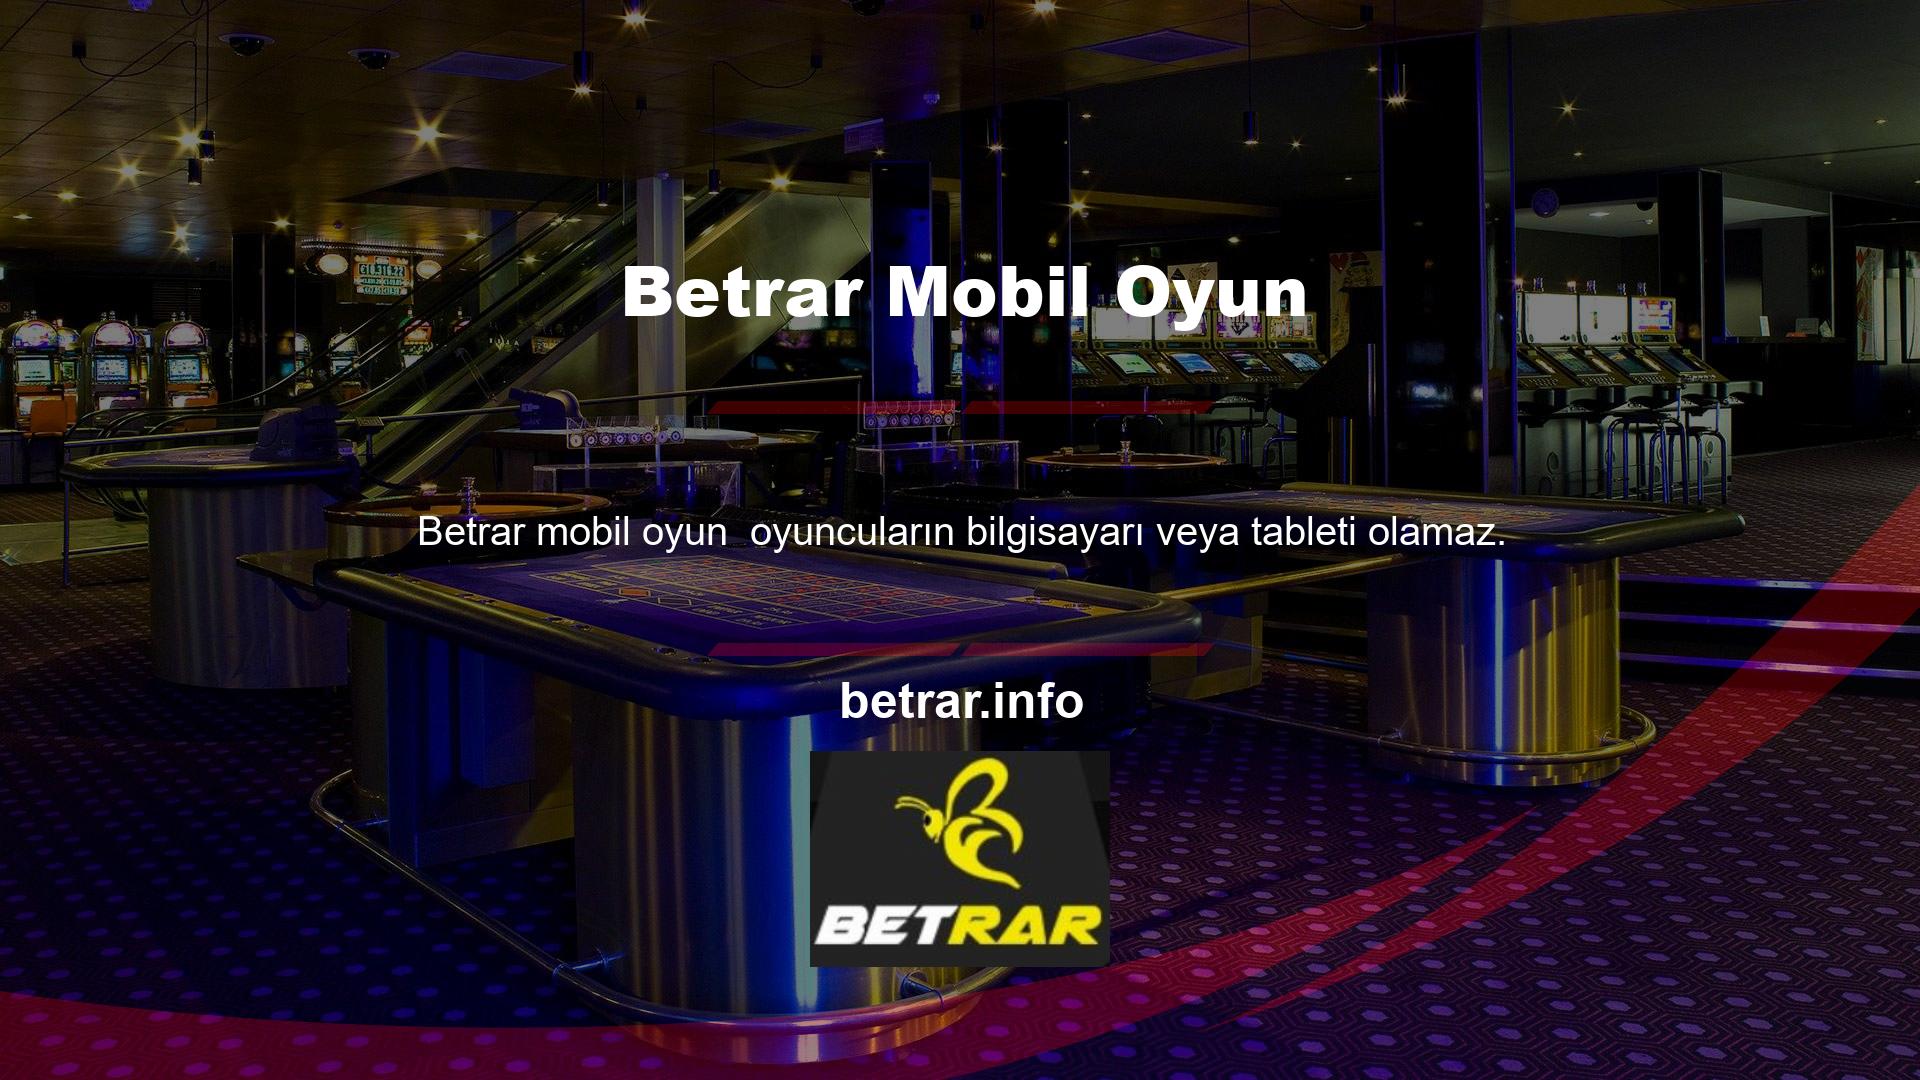 Betrar Mobil Oyununda casino oynayanlar için cep telefonunun bulunması şartıyla Türk yasal bahis siteleri mevcuttur